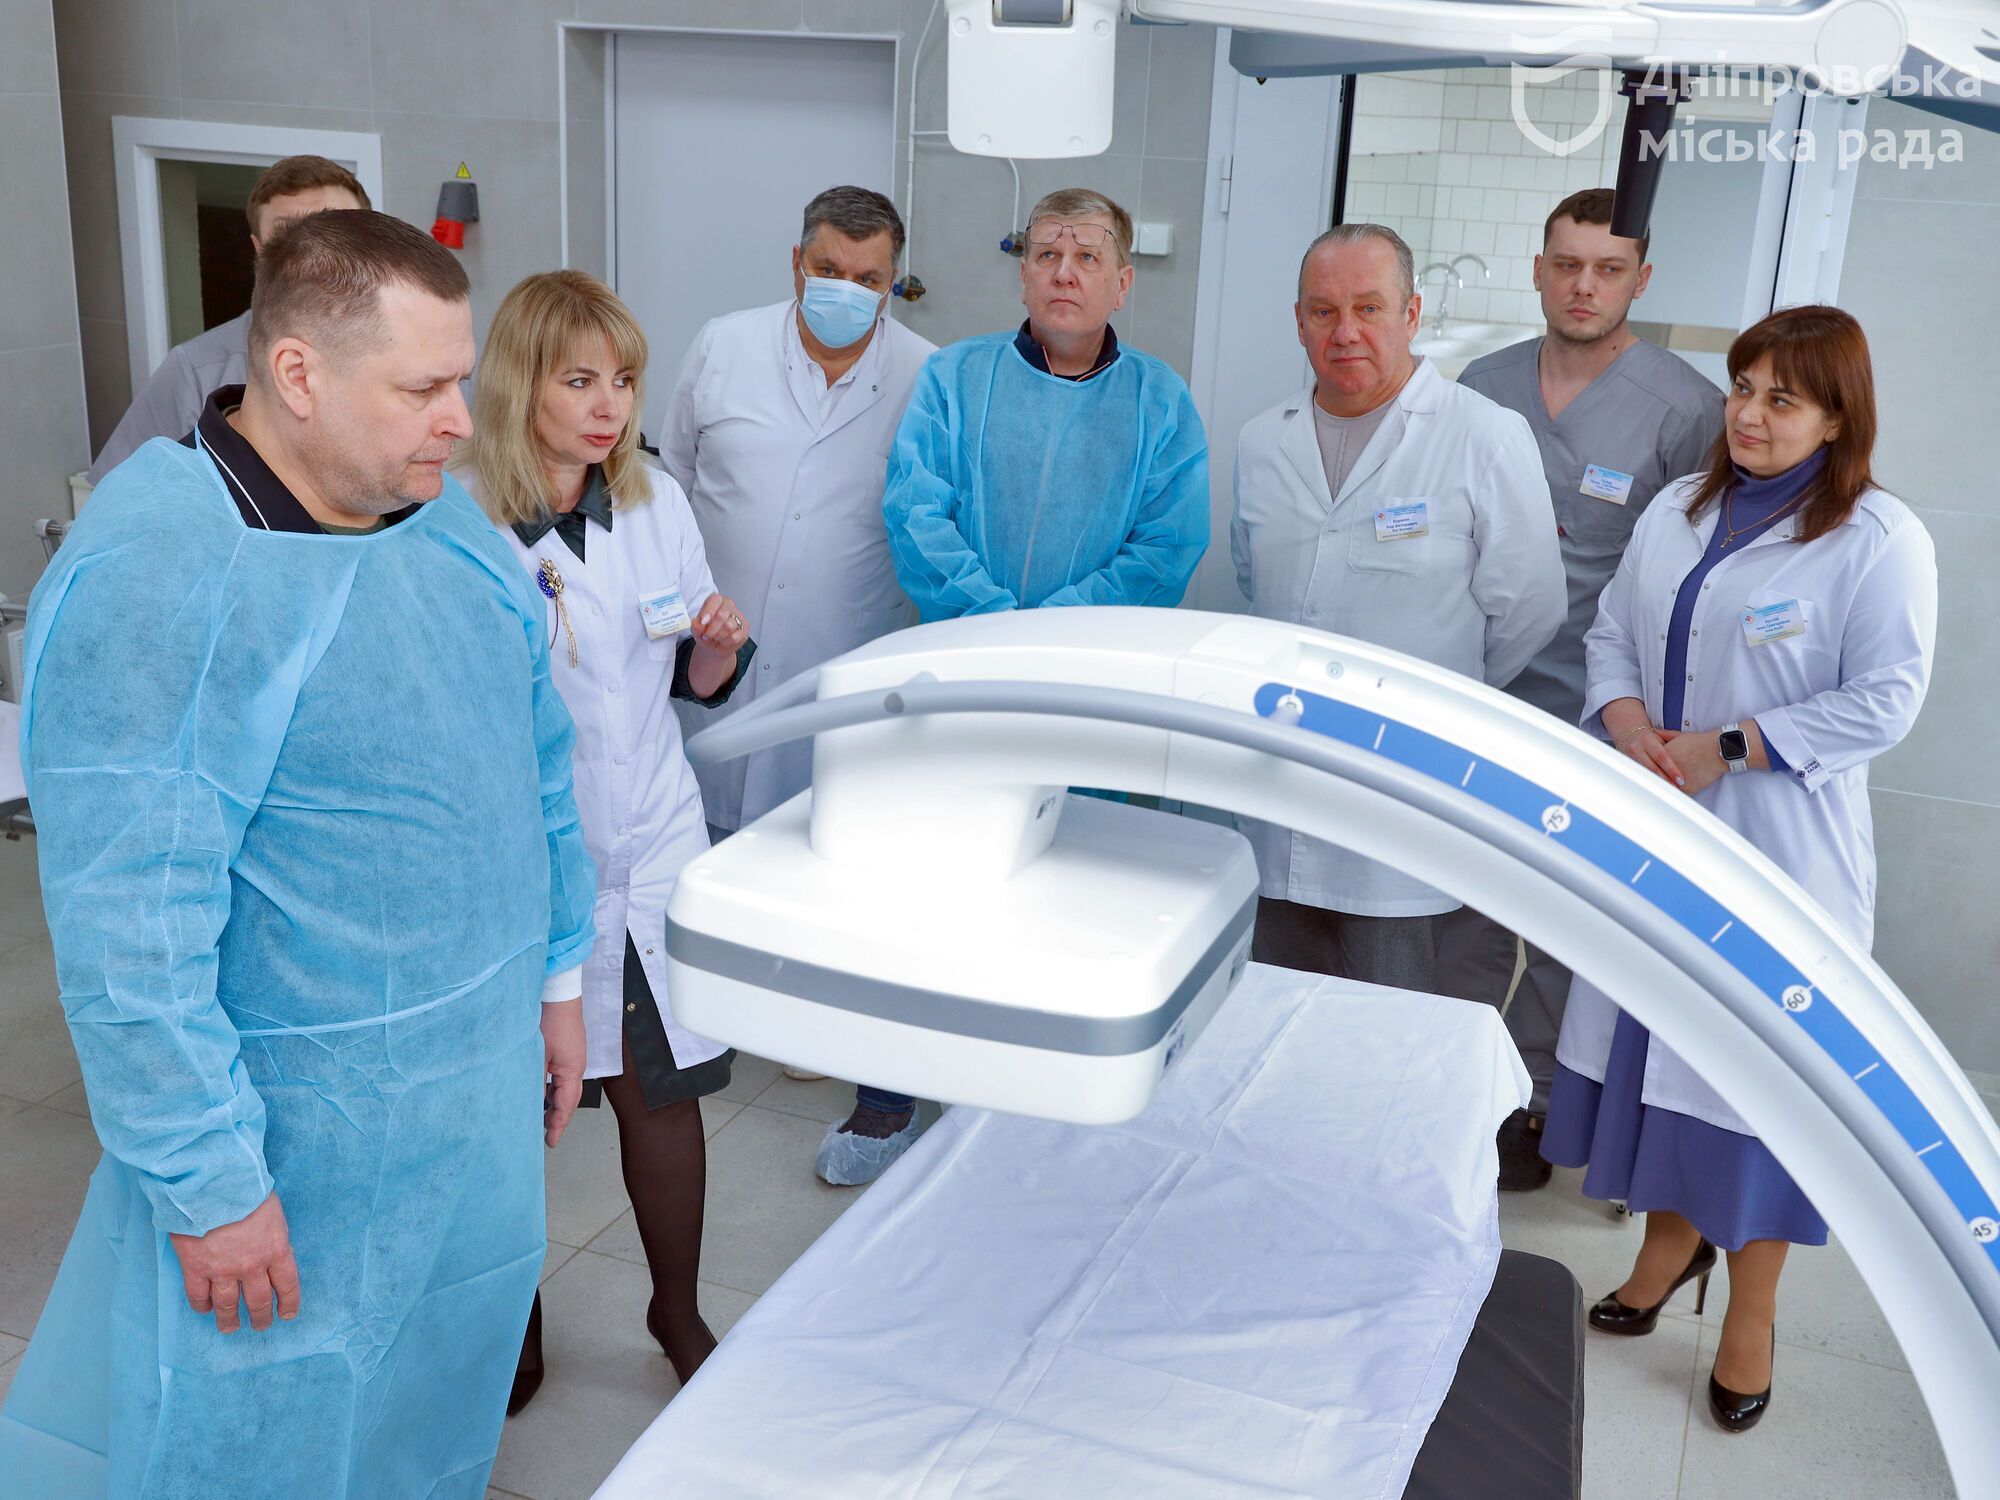 Складні операції та сучасне обладнання: у 4-й міській лікарні Дніпра відкрили нейрохірургічне відділення